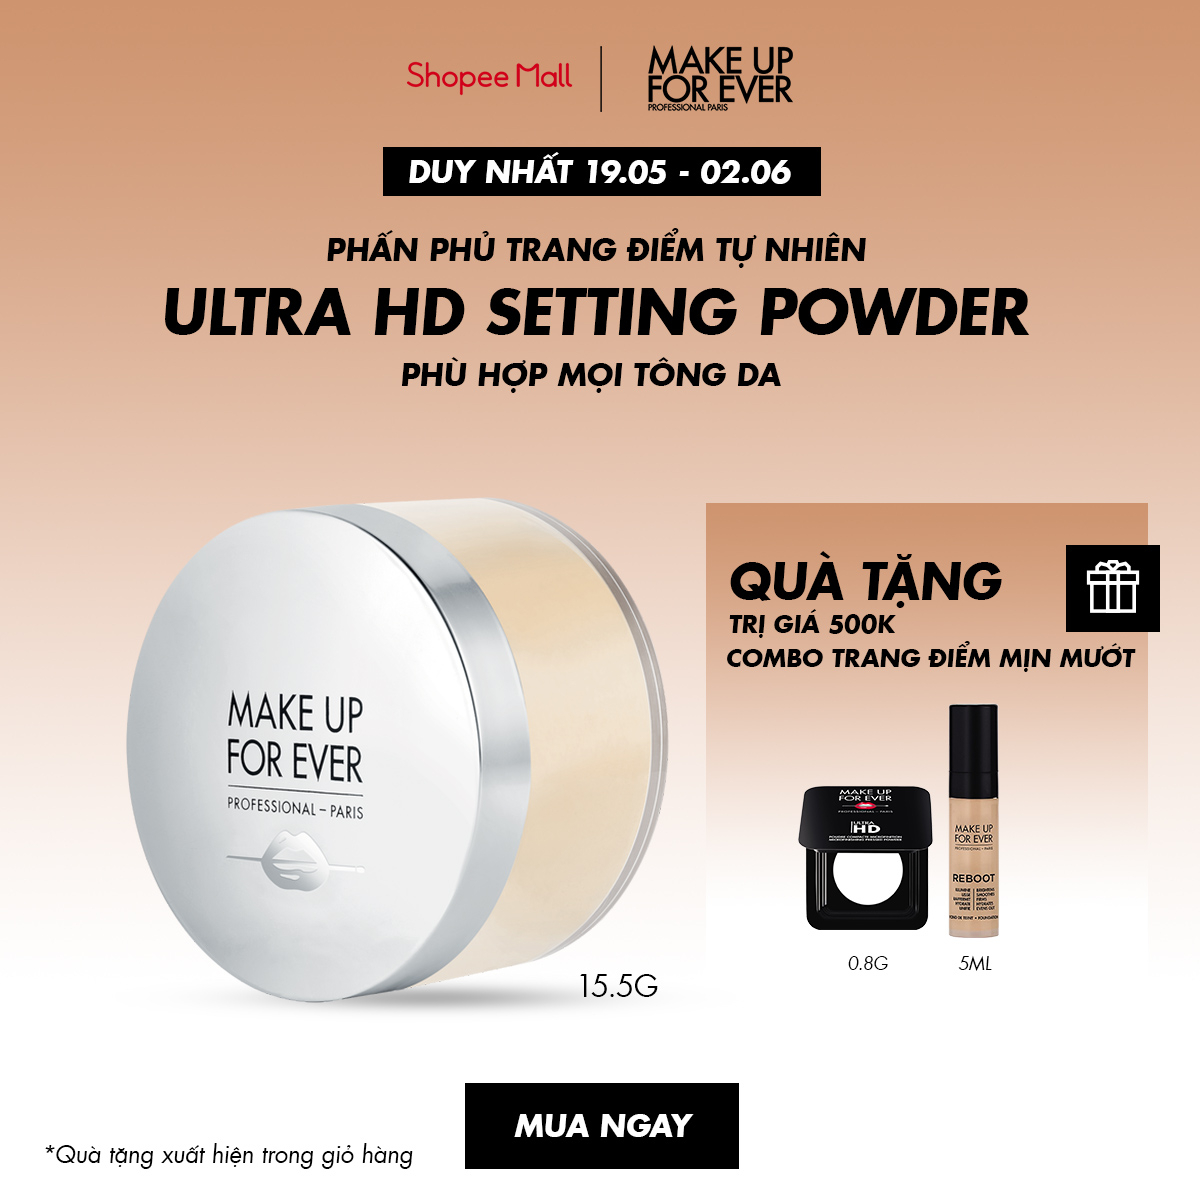  Phấn phủ Make Up For Ever Ultra HD Setting Powder 15.5G 2021 - Nhập khẩu độc quyền từ Pháp